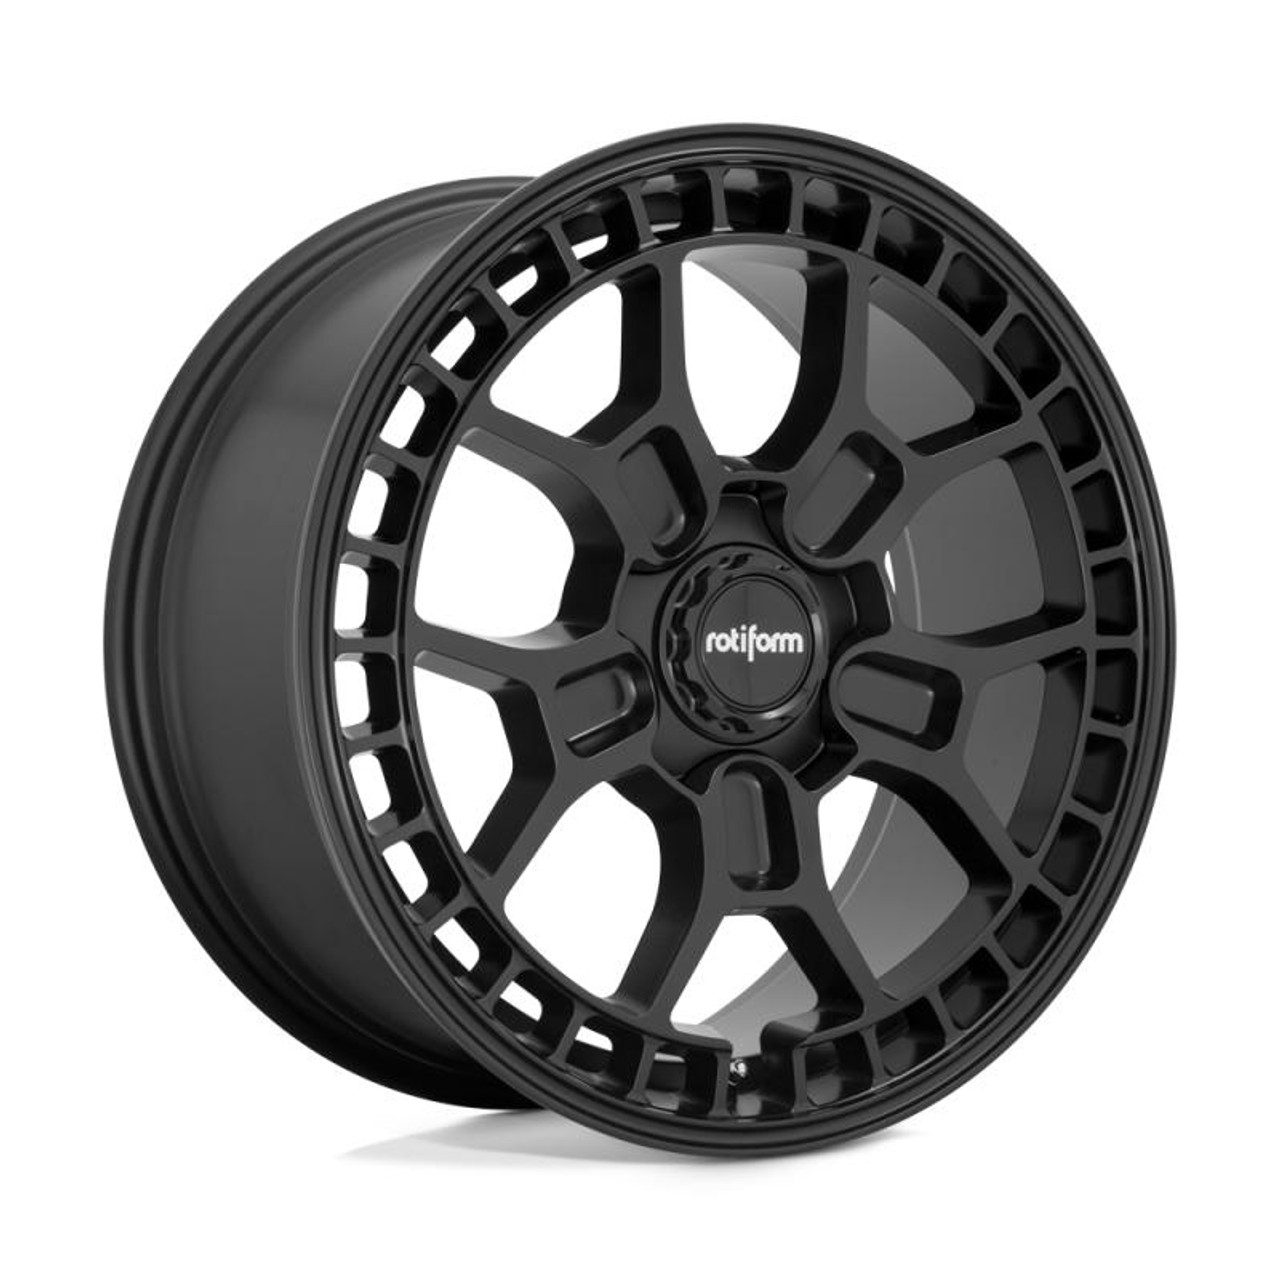  Rotiform R180 ZMO-M Wheel 19x8.5 5x112 45 Offset - Matte Black - R180198543+45 